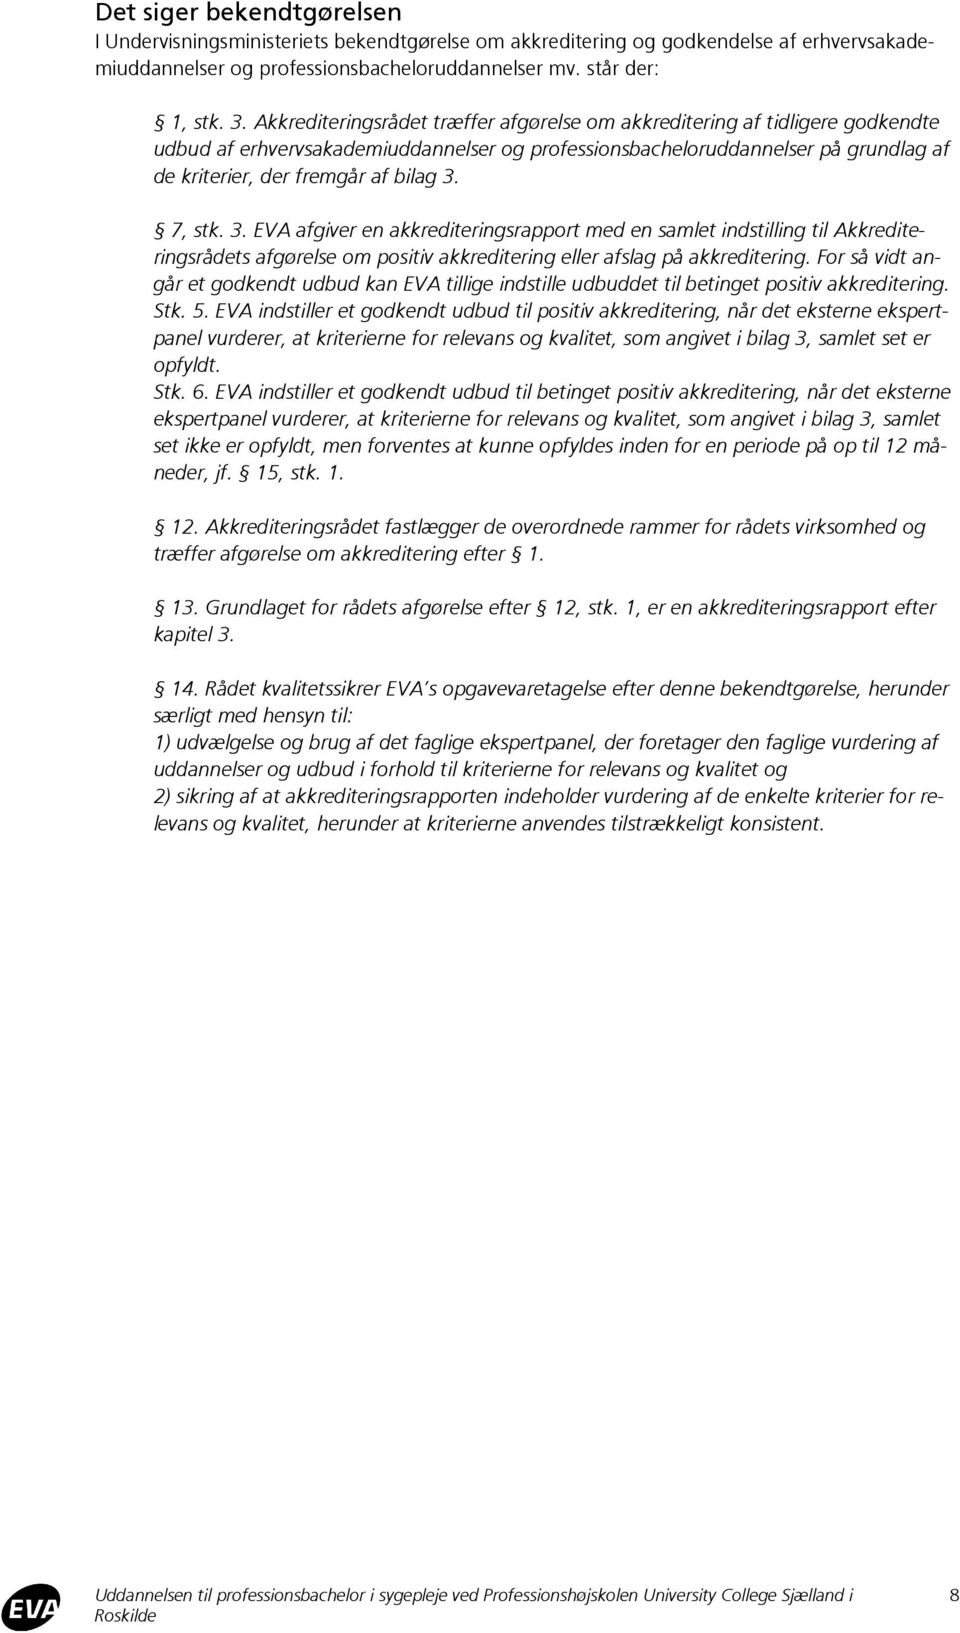 7, stk. 3. EVA afgiver en akkrediteringsrapport med en samlet indstilling til Akkrediteringsrådets afgørelse om positiv akkreditering eller afslag på akkreditering.